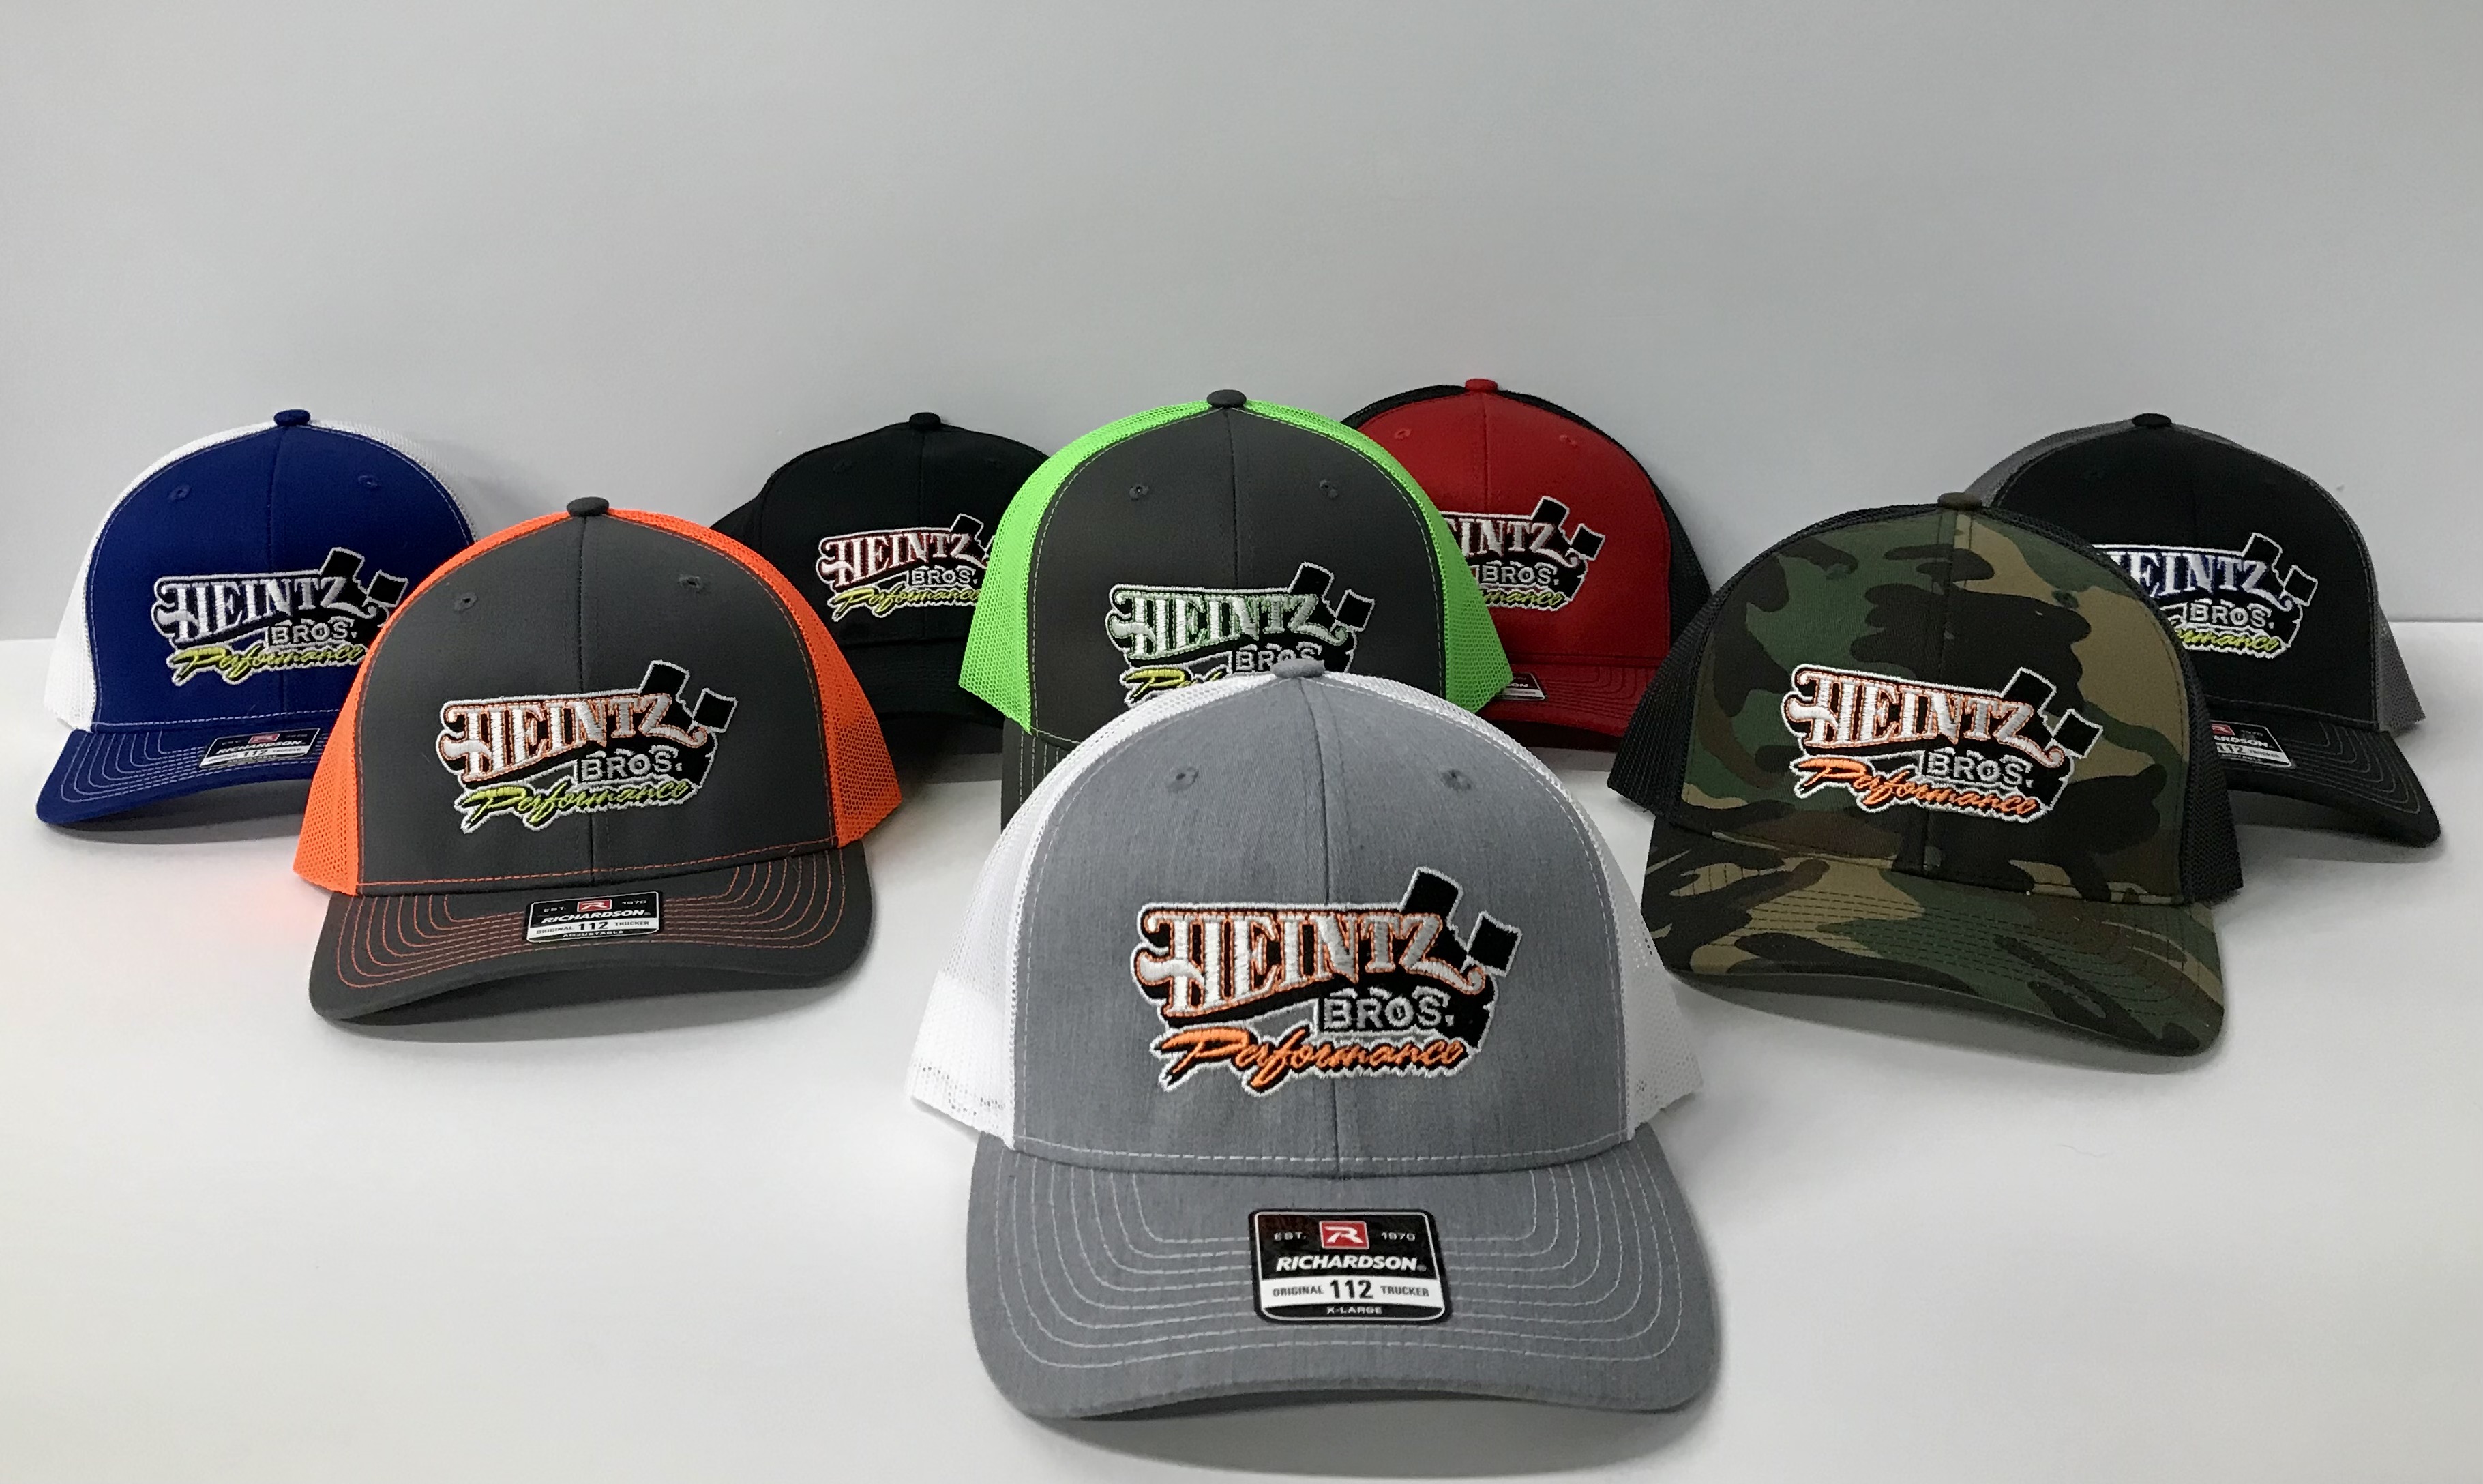 Heintz Brothers Trucker Hats In Stock!